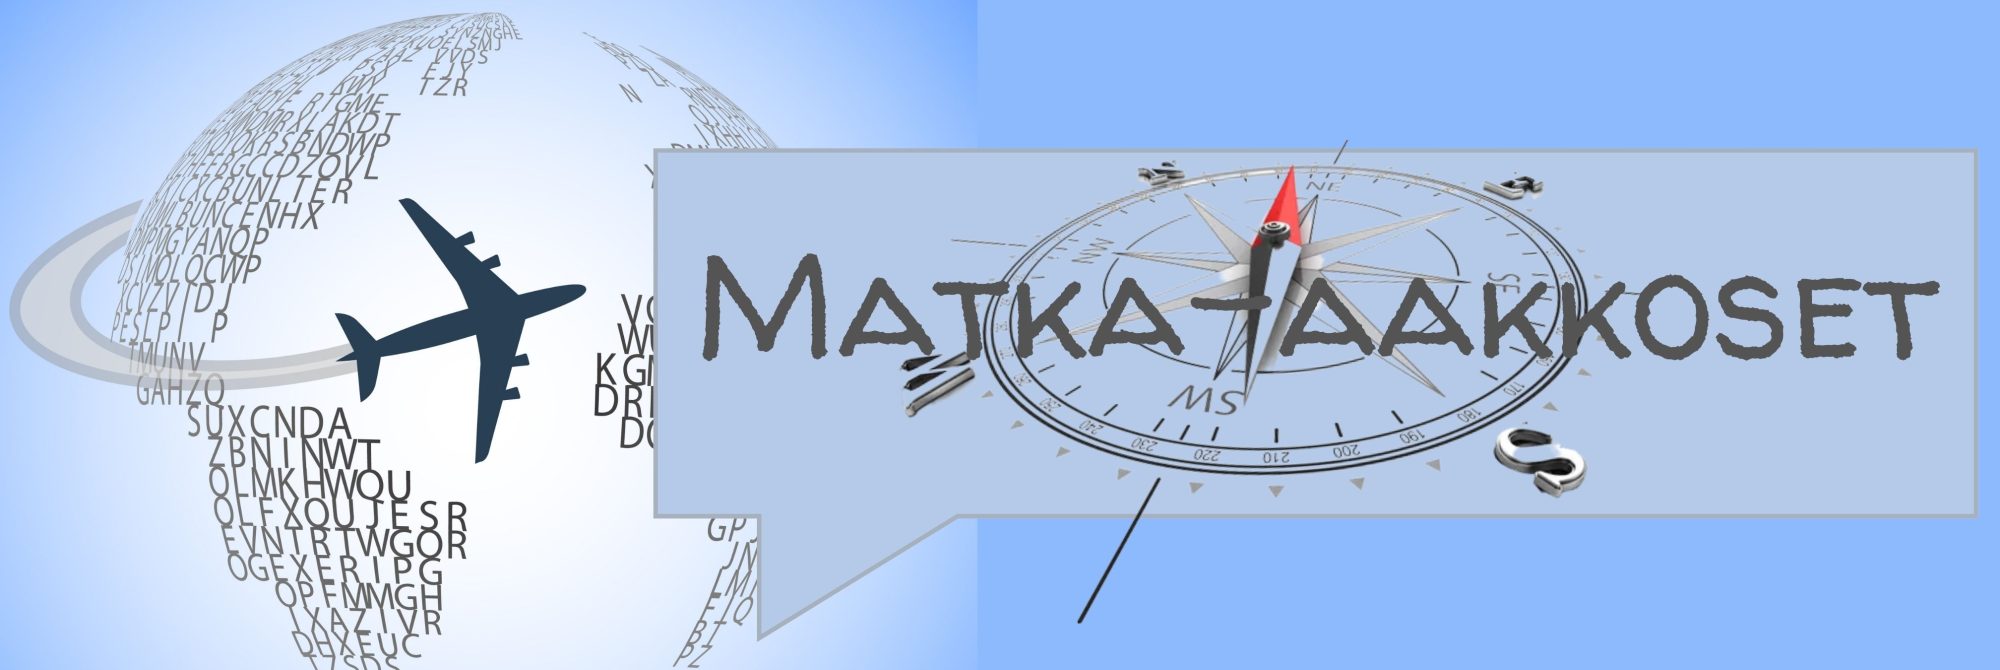 Matka-aakkoset A-J banner